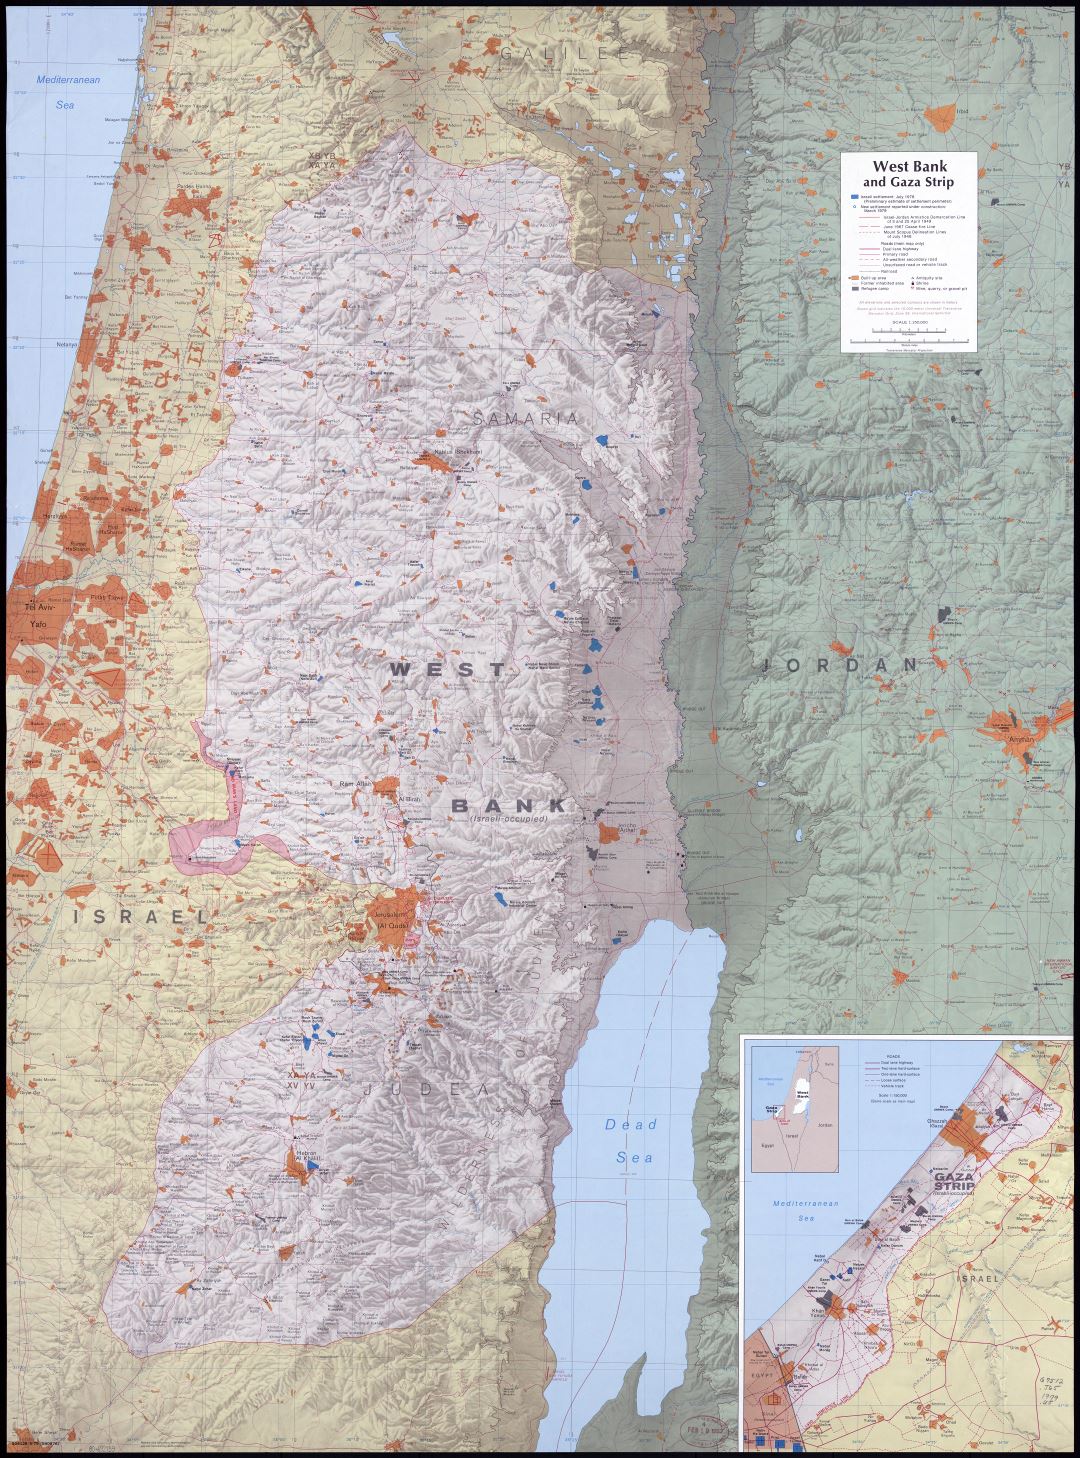 A gran escala detallado mapa de Cisjordania y la Franja de Gaza con relieve, carreteras, ciudades y otras marcas